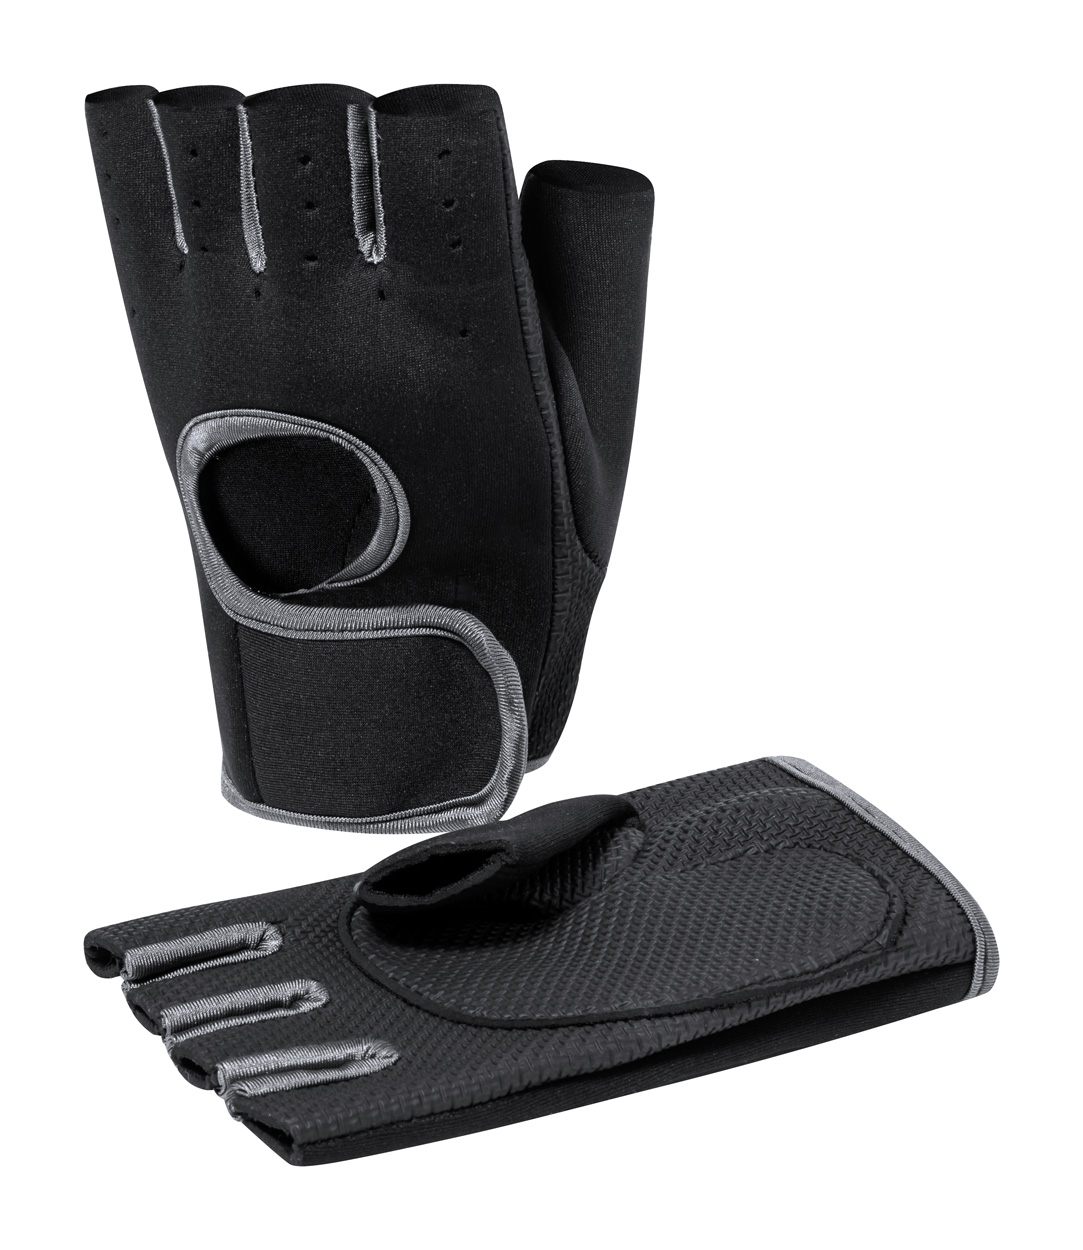 Scot sports gloves - black